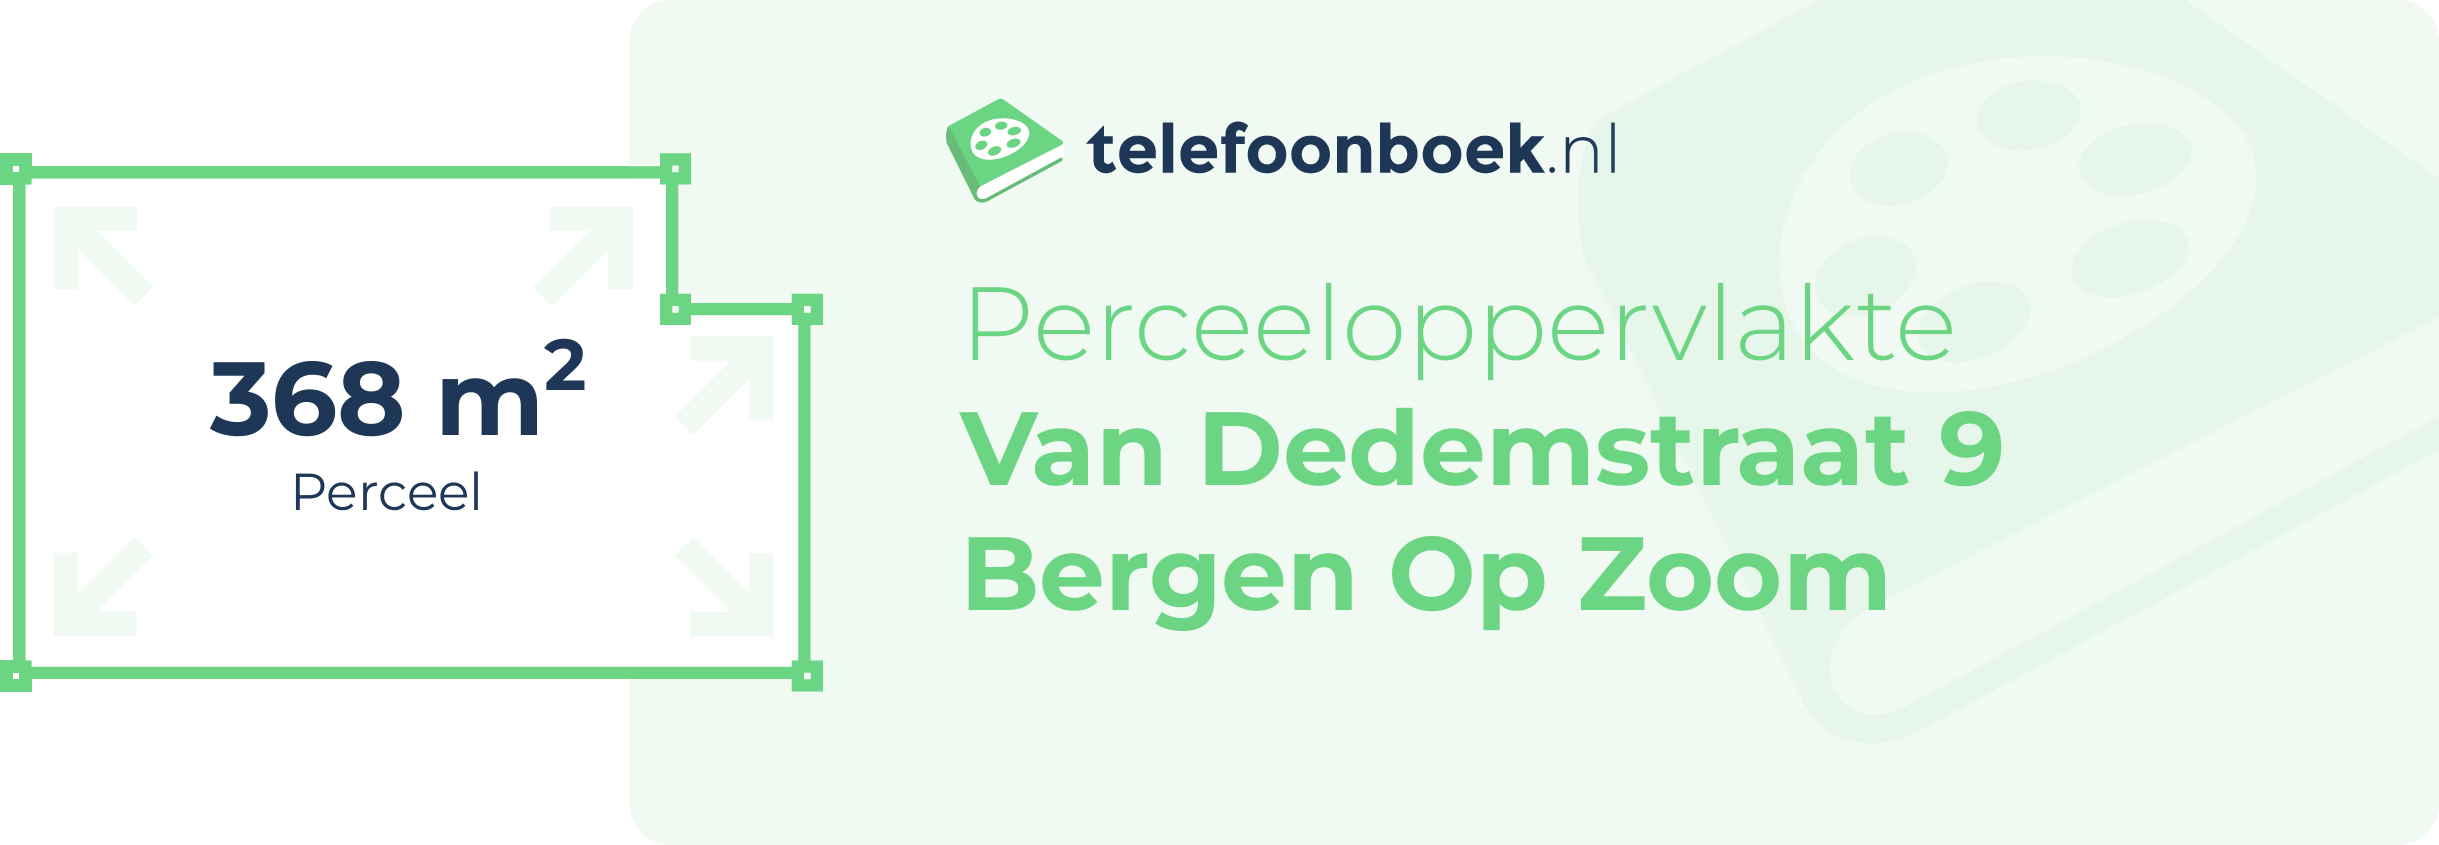 Perceeloppervlakte Van Dedemstraat 9 Bergen Op Zoom